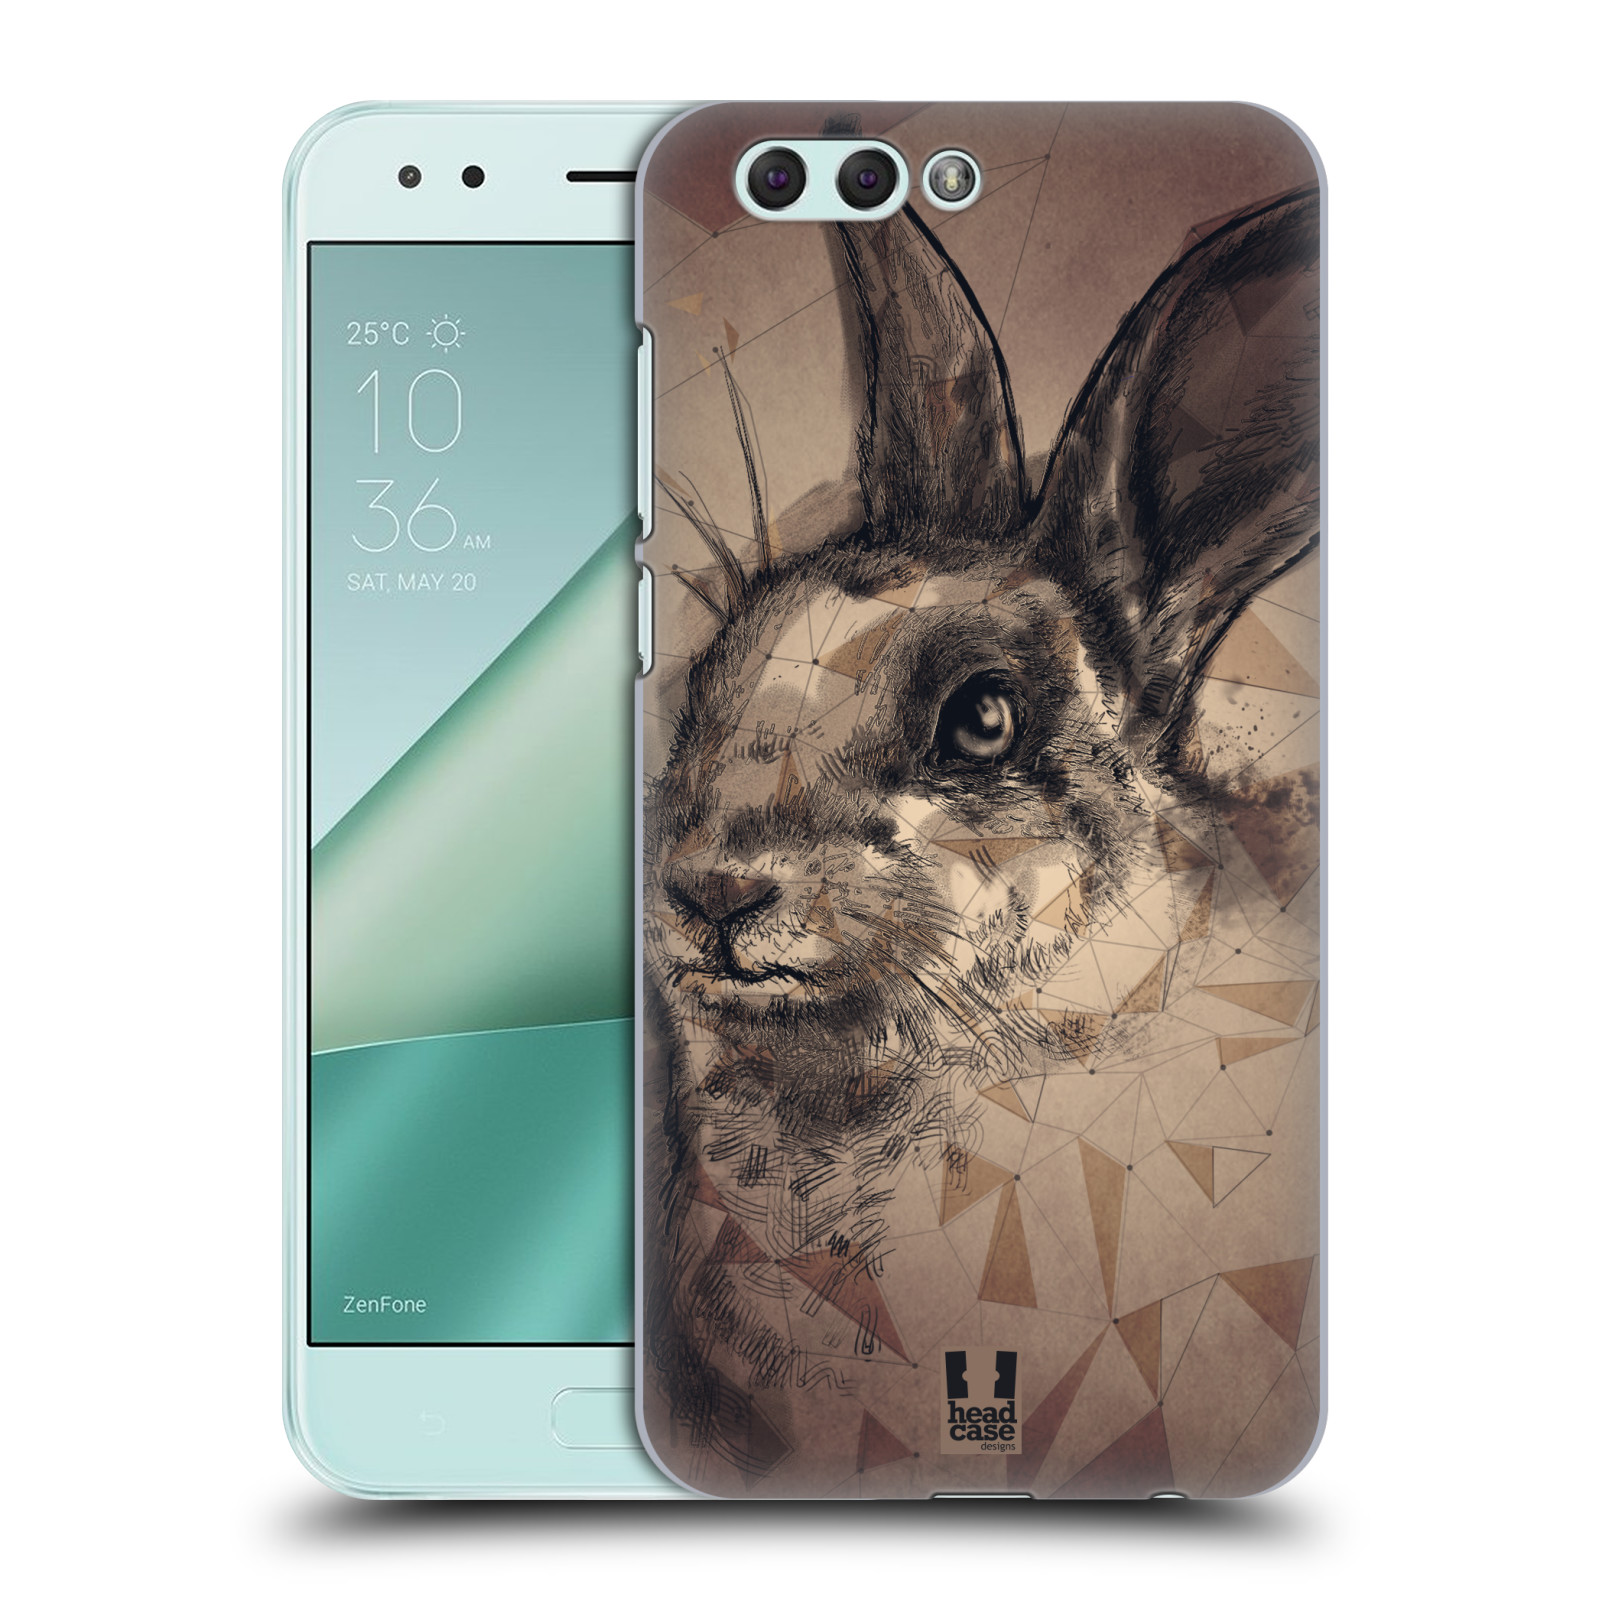 HEAD CASE plastový obal na mobil Asus Zenfone 4 ZE554KL vzor Skica zvíře kreslené zajíc